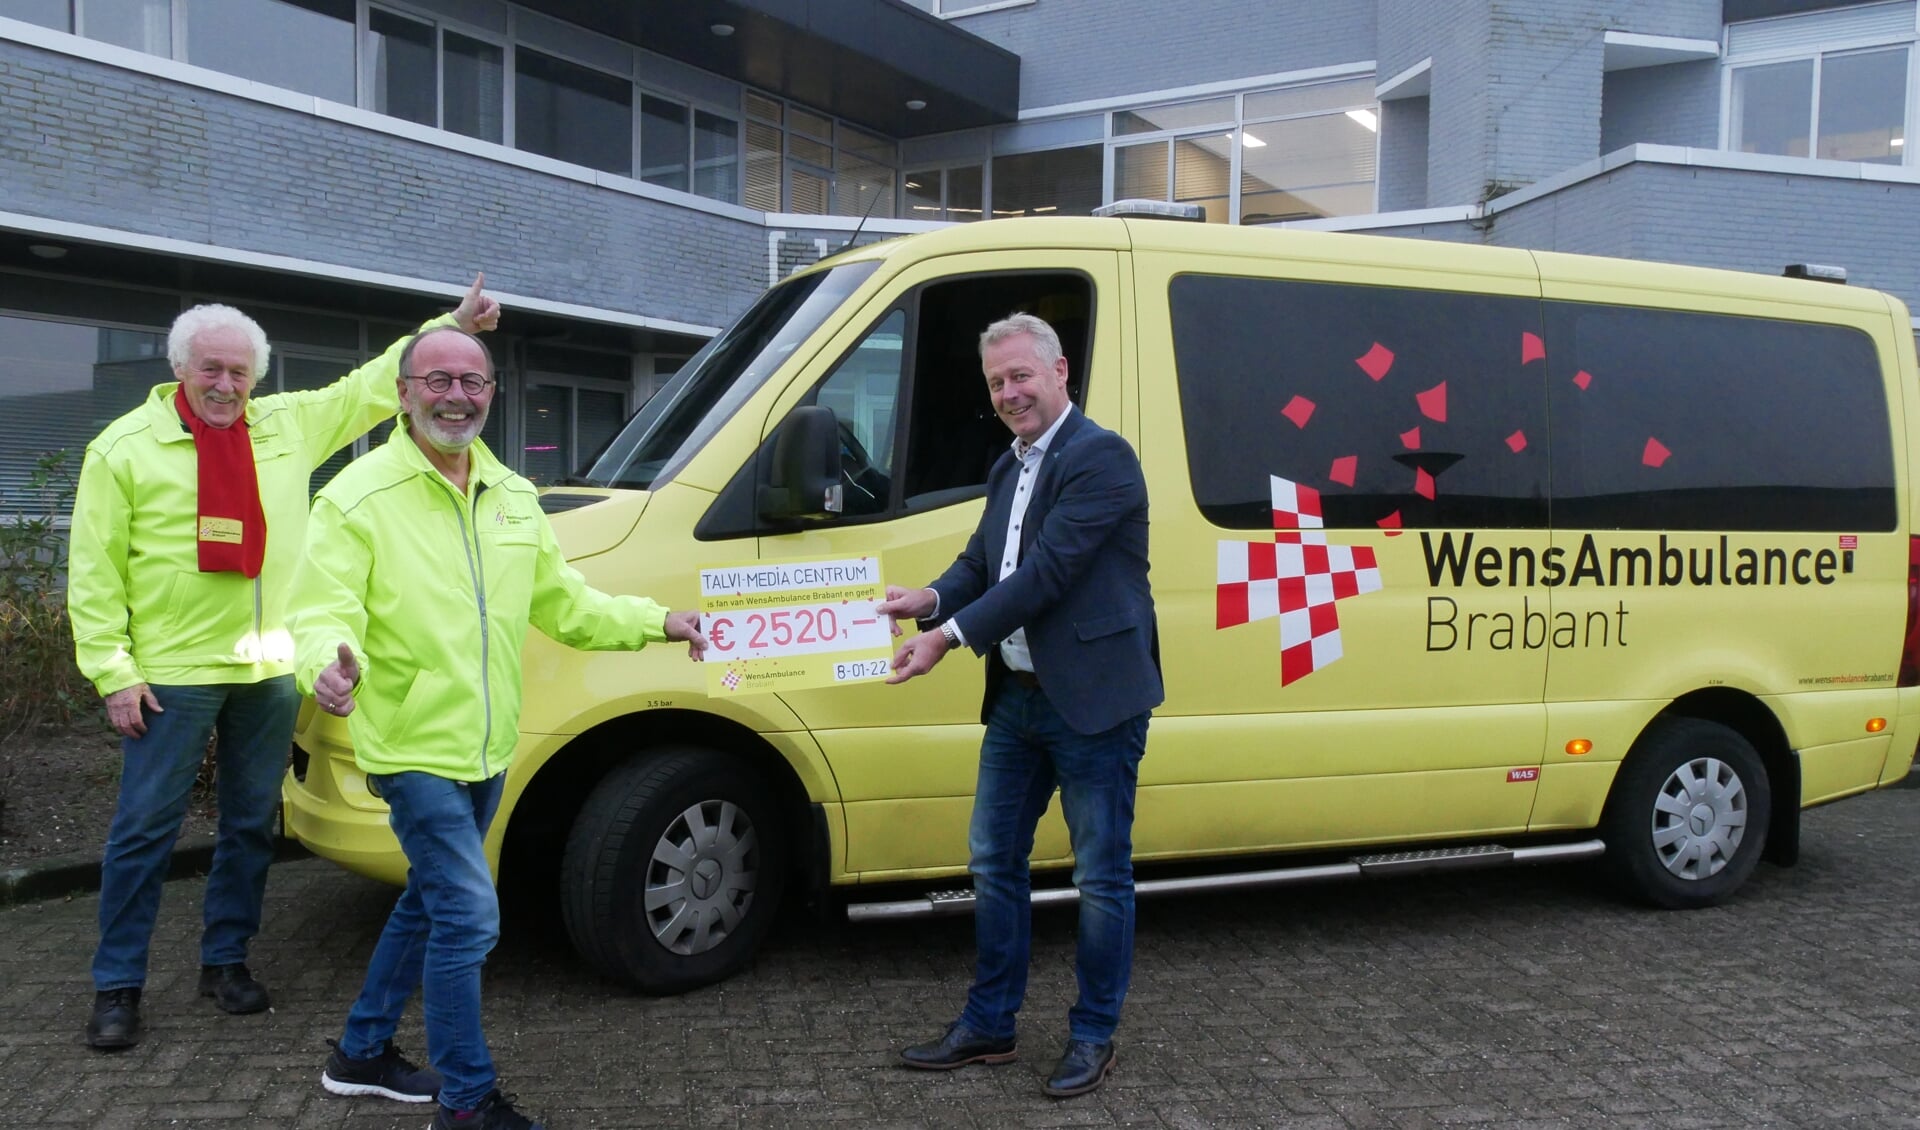 Chauffeurs Albert van Maasakkers en Barry van Brakel nemen namens WensAmbulance Brabant de cheque in ontvangst uit handen van Jeroen van der Horst van Talvi Mediacentrum.